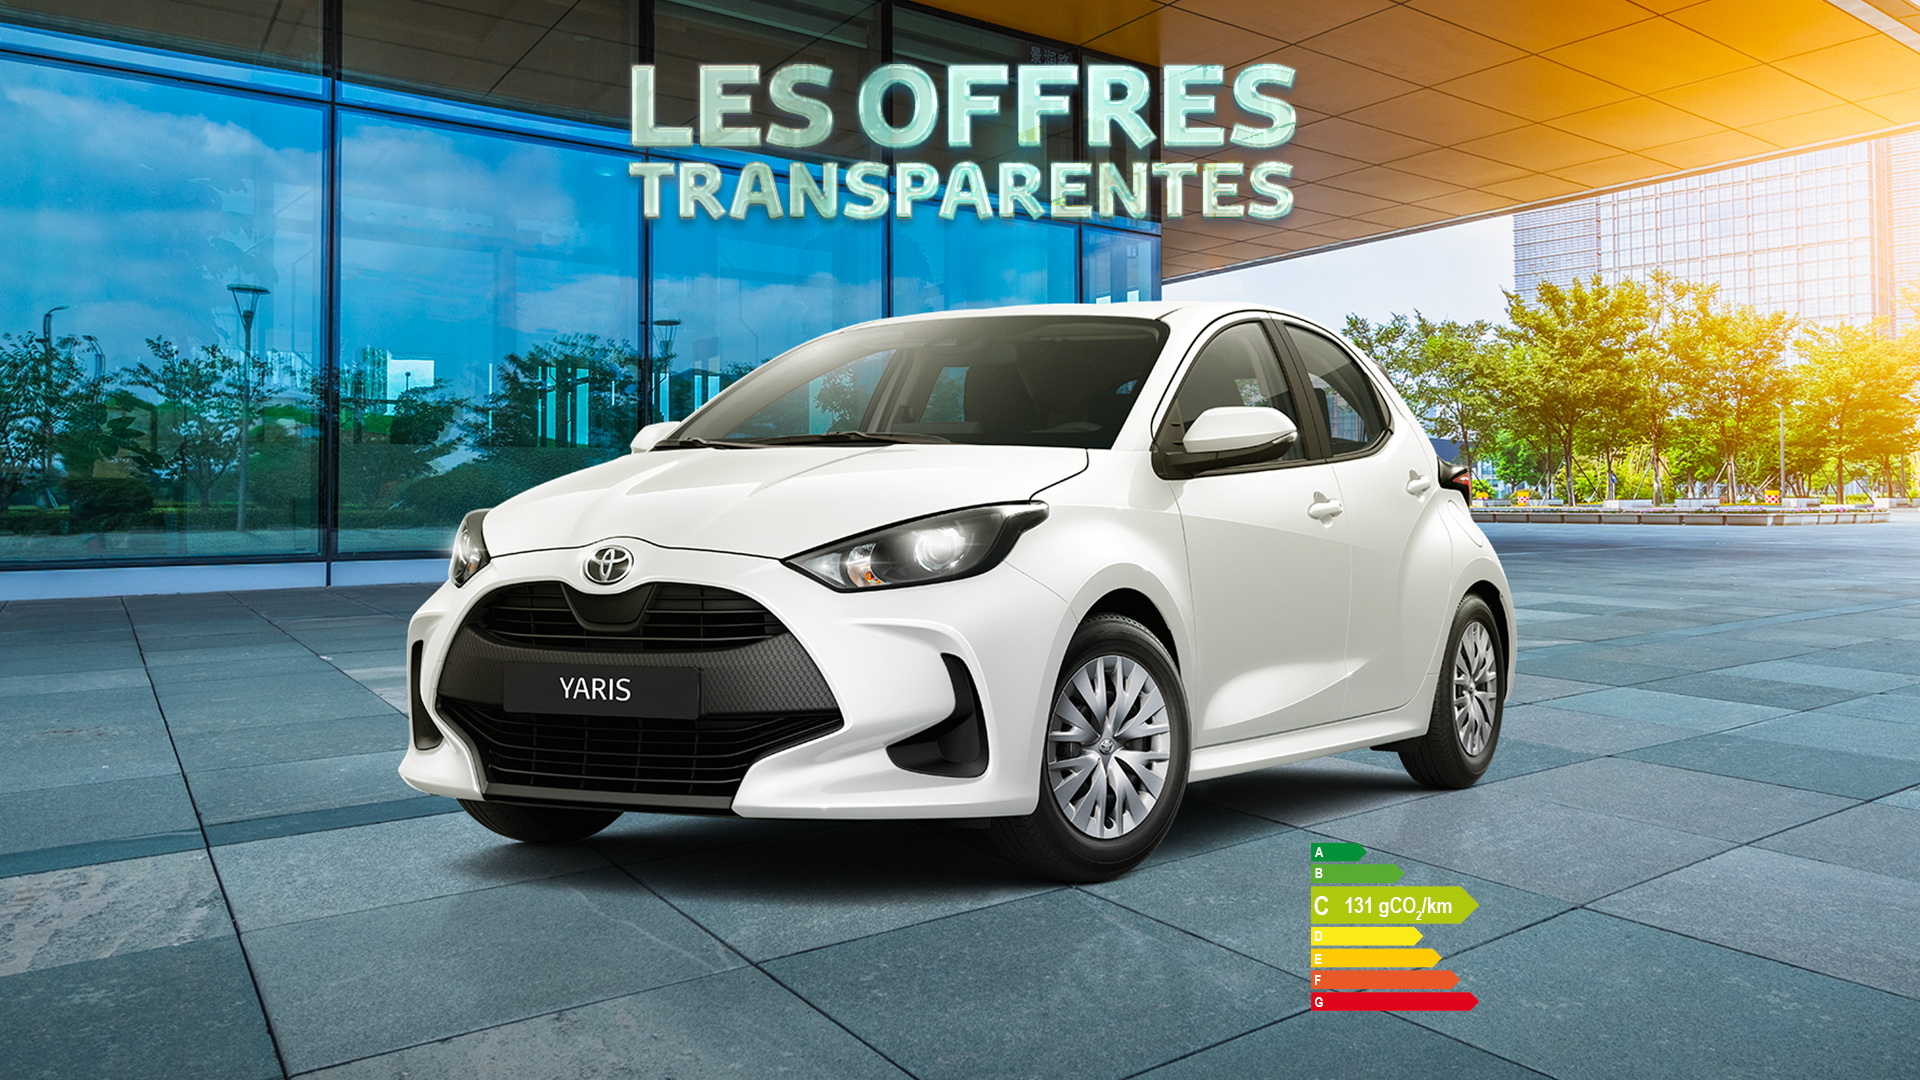 Yaris france - Toyota Réunion - les offres transparentes - juin 22